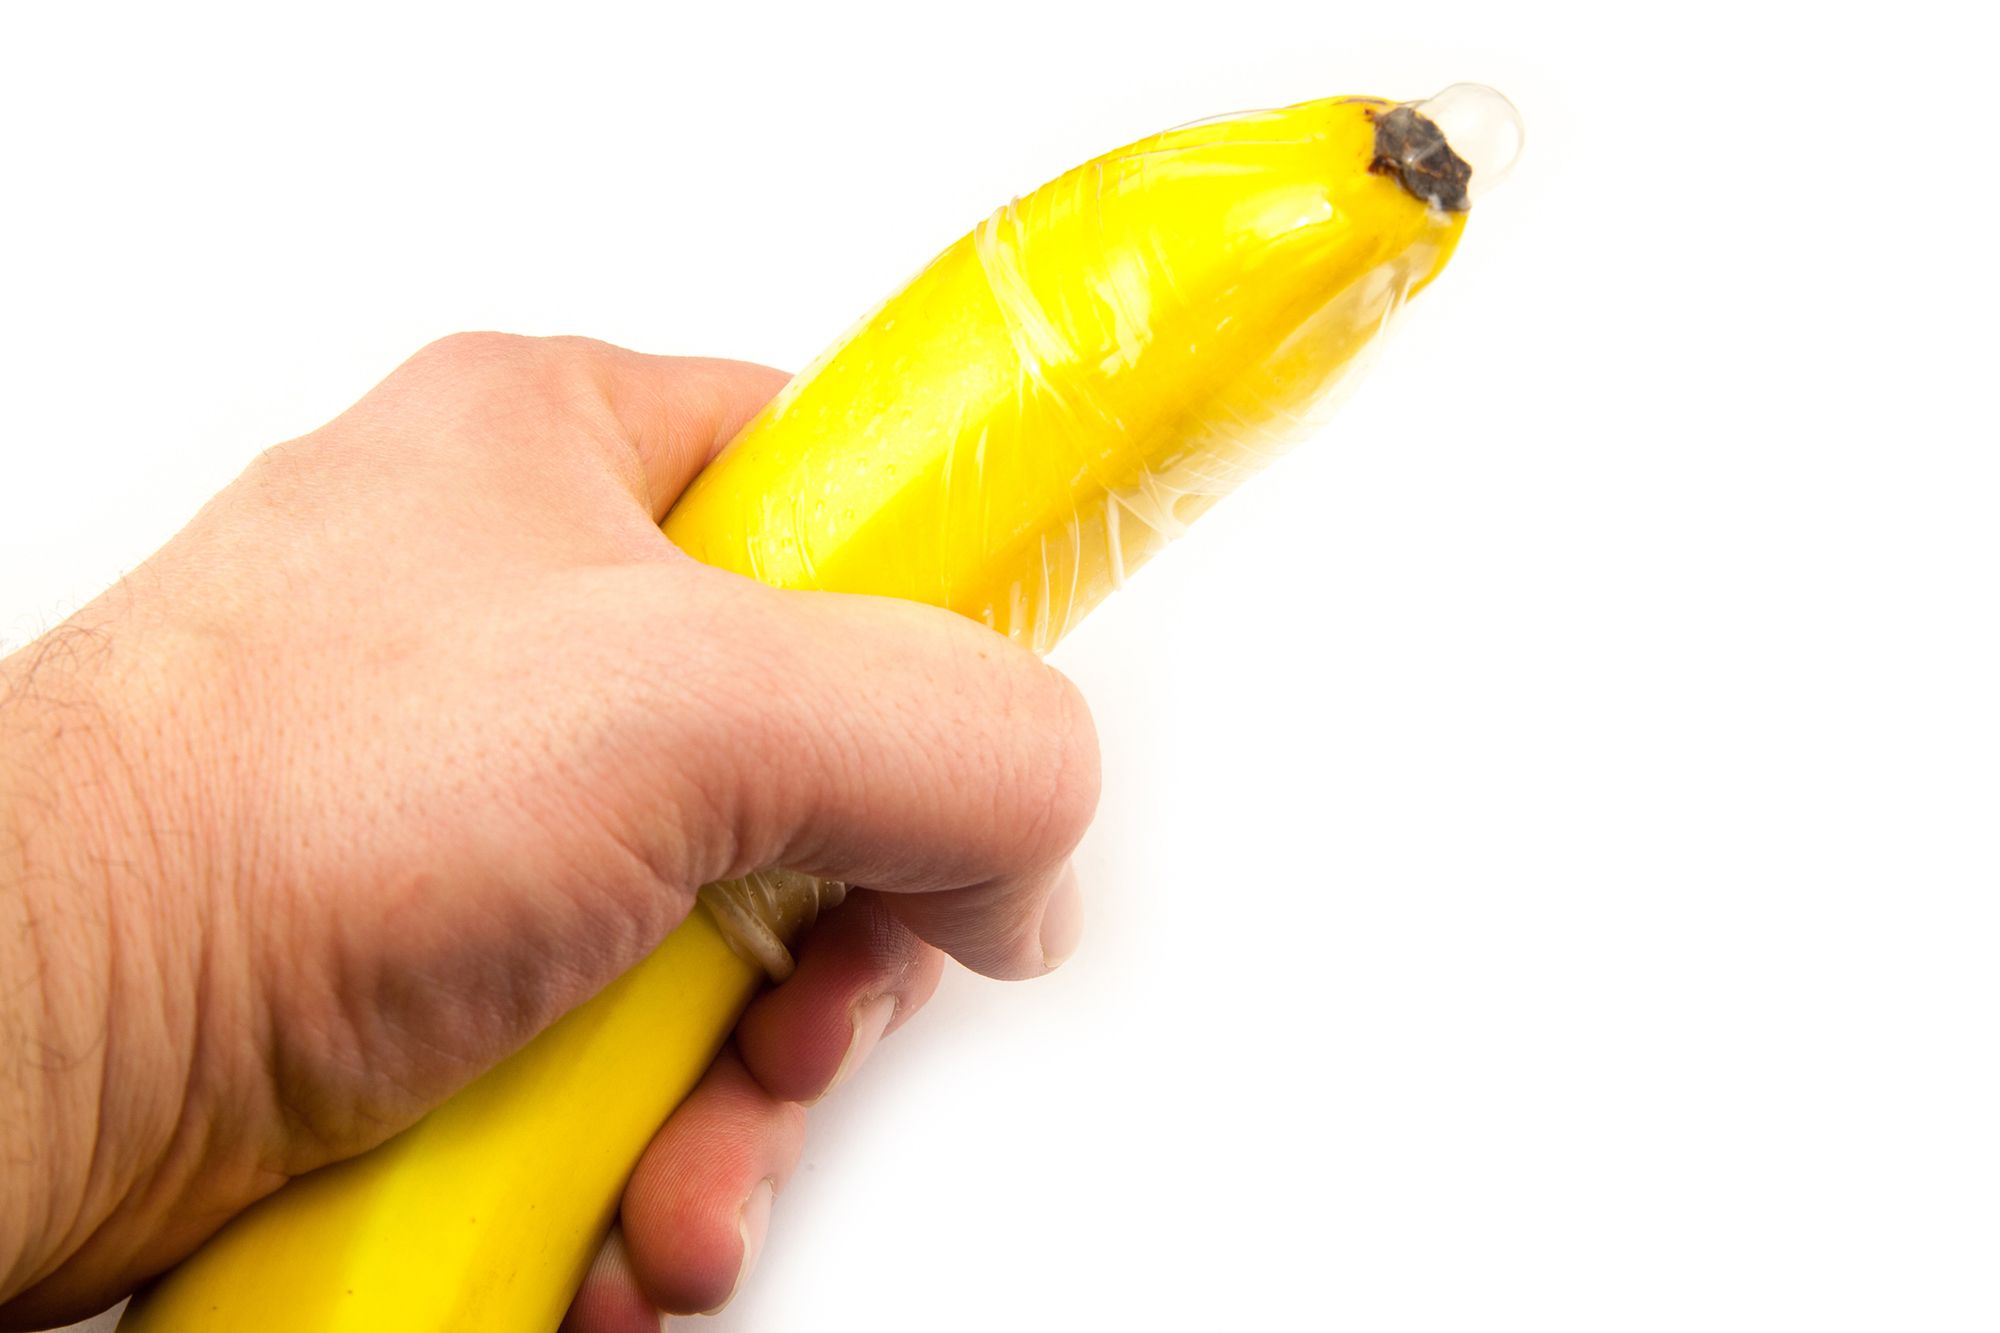 Mann hält eine Banane in der Hand, über die ein Kondom gestülpt ist